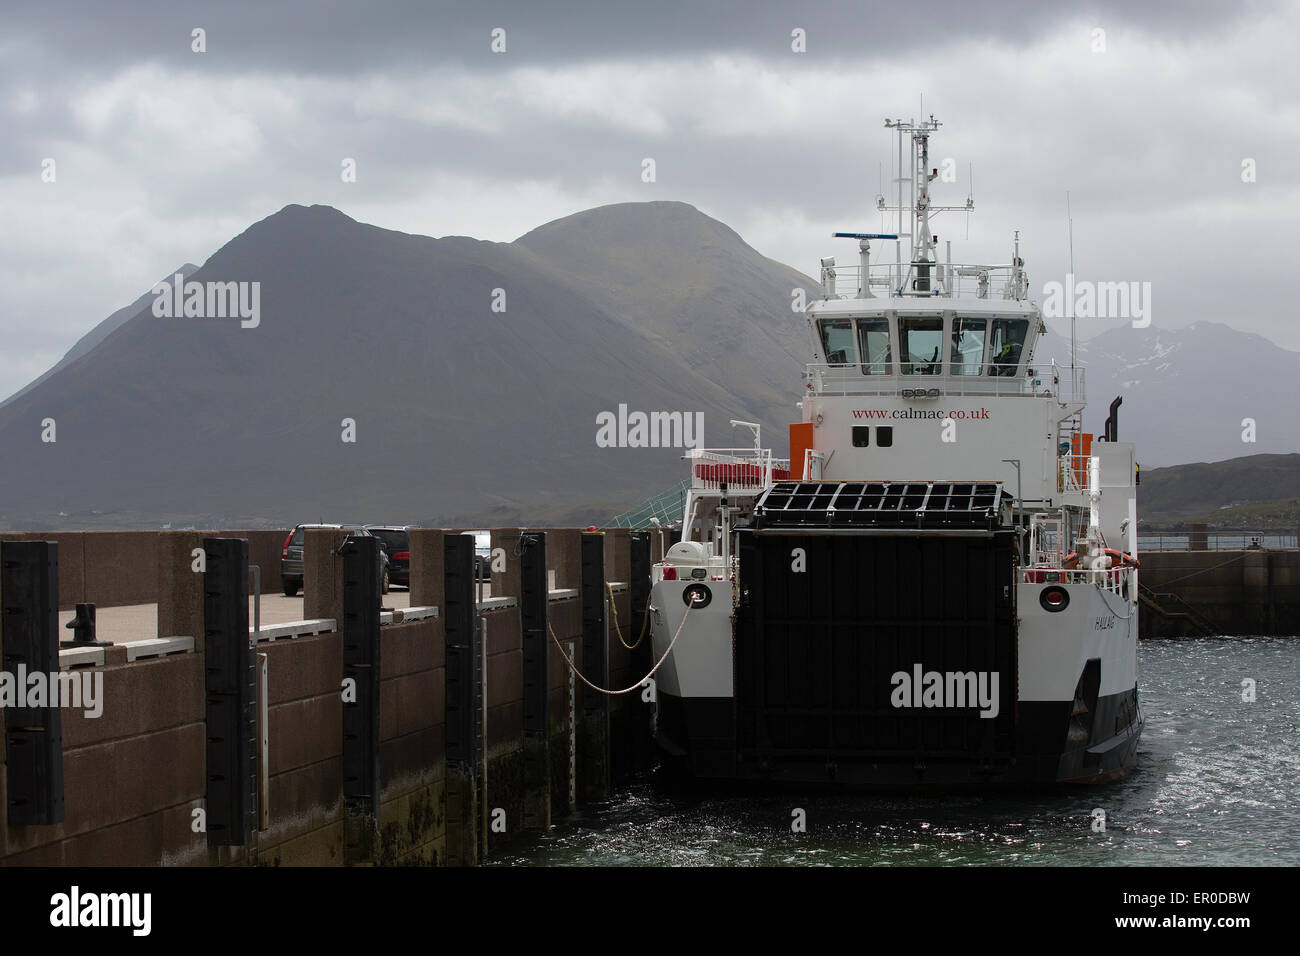 El Caledonian MacBrayne CalMac ferry atracó en la isla de Raasay con la Isla de Skye en el fondo en el interior de las Hébridas Foto de stock